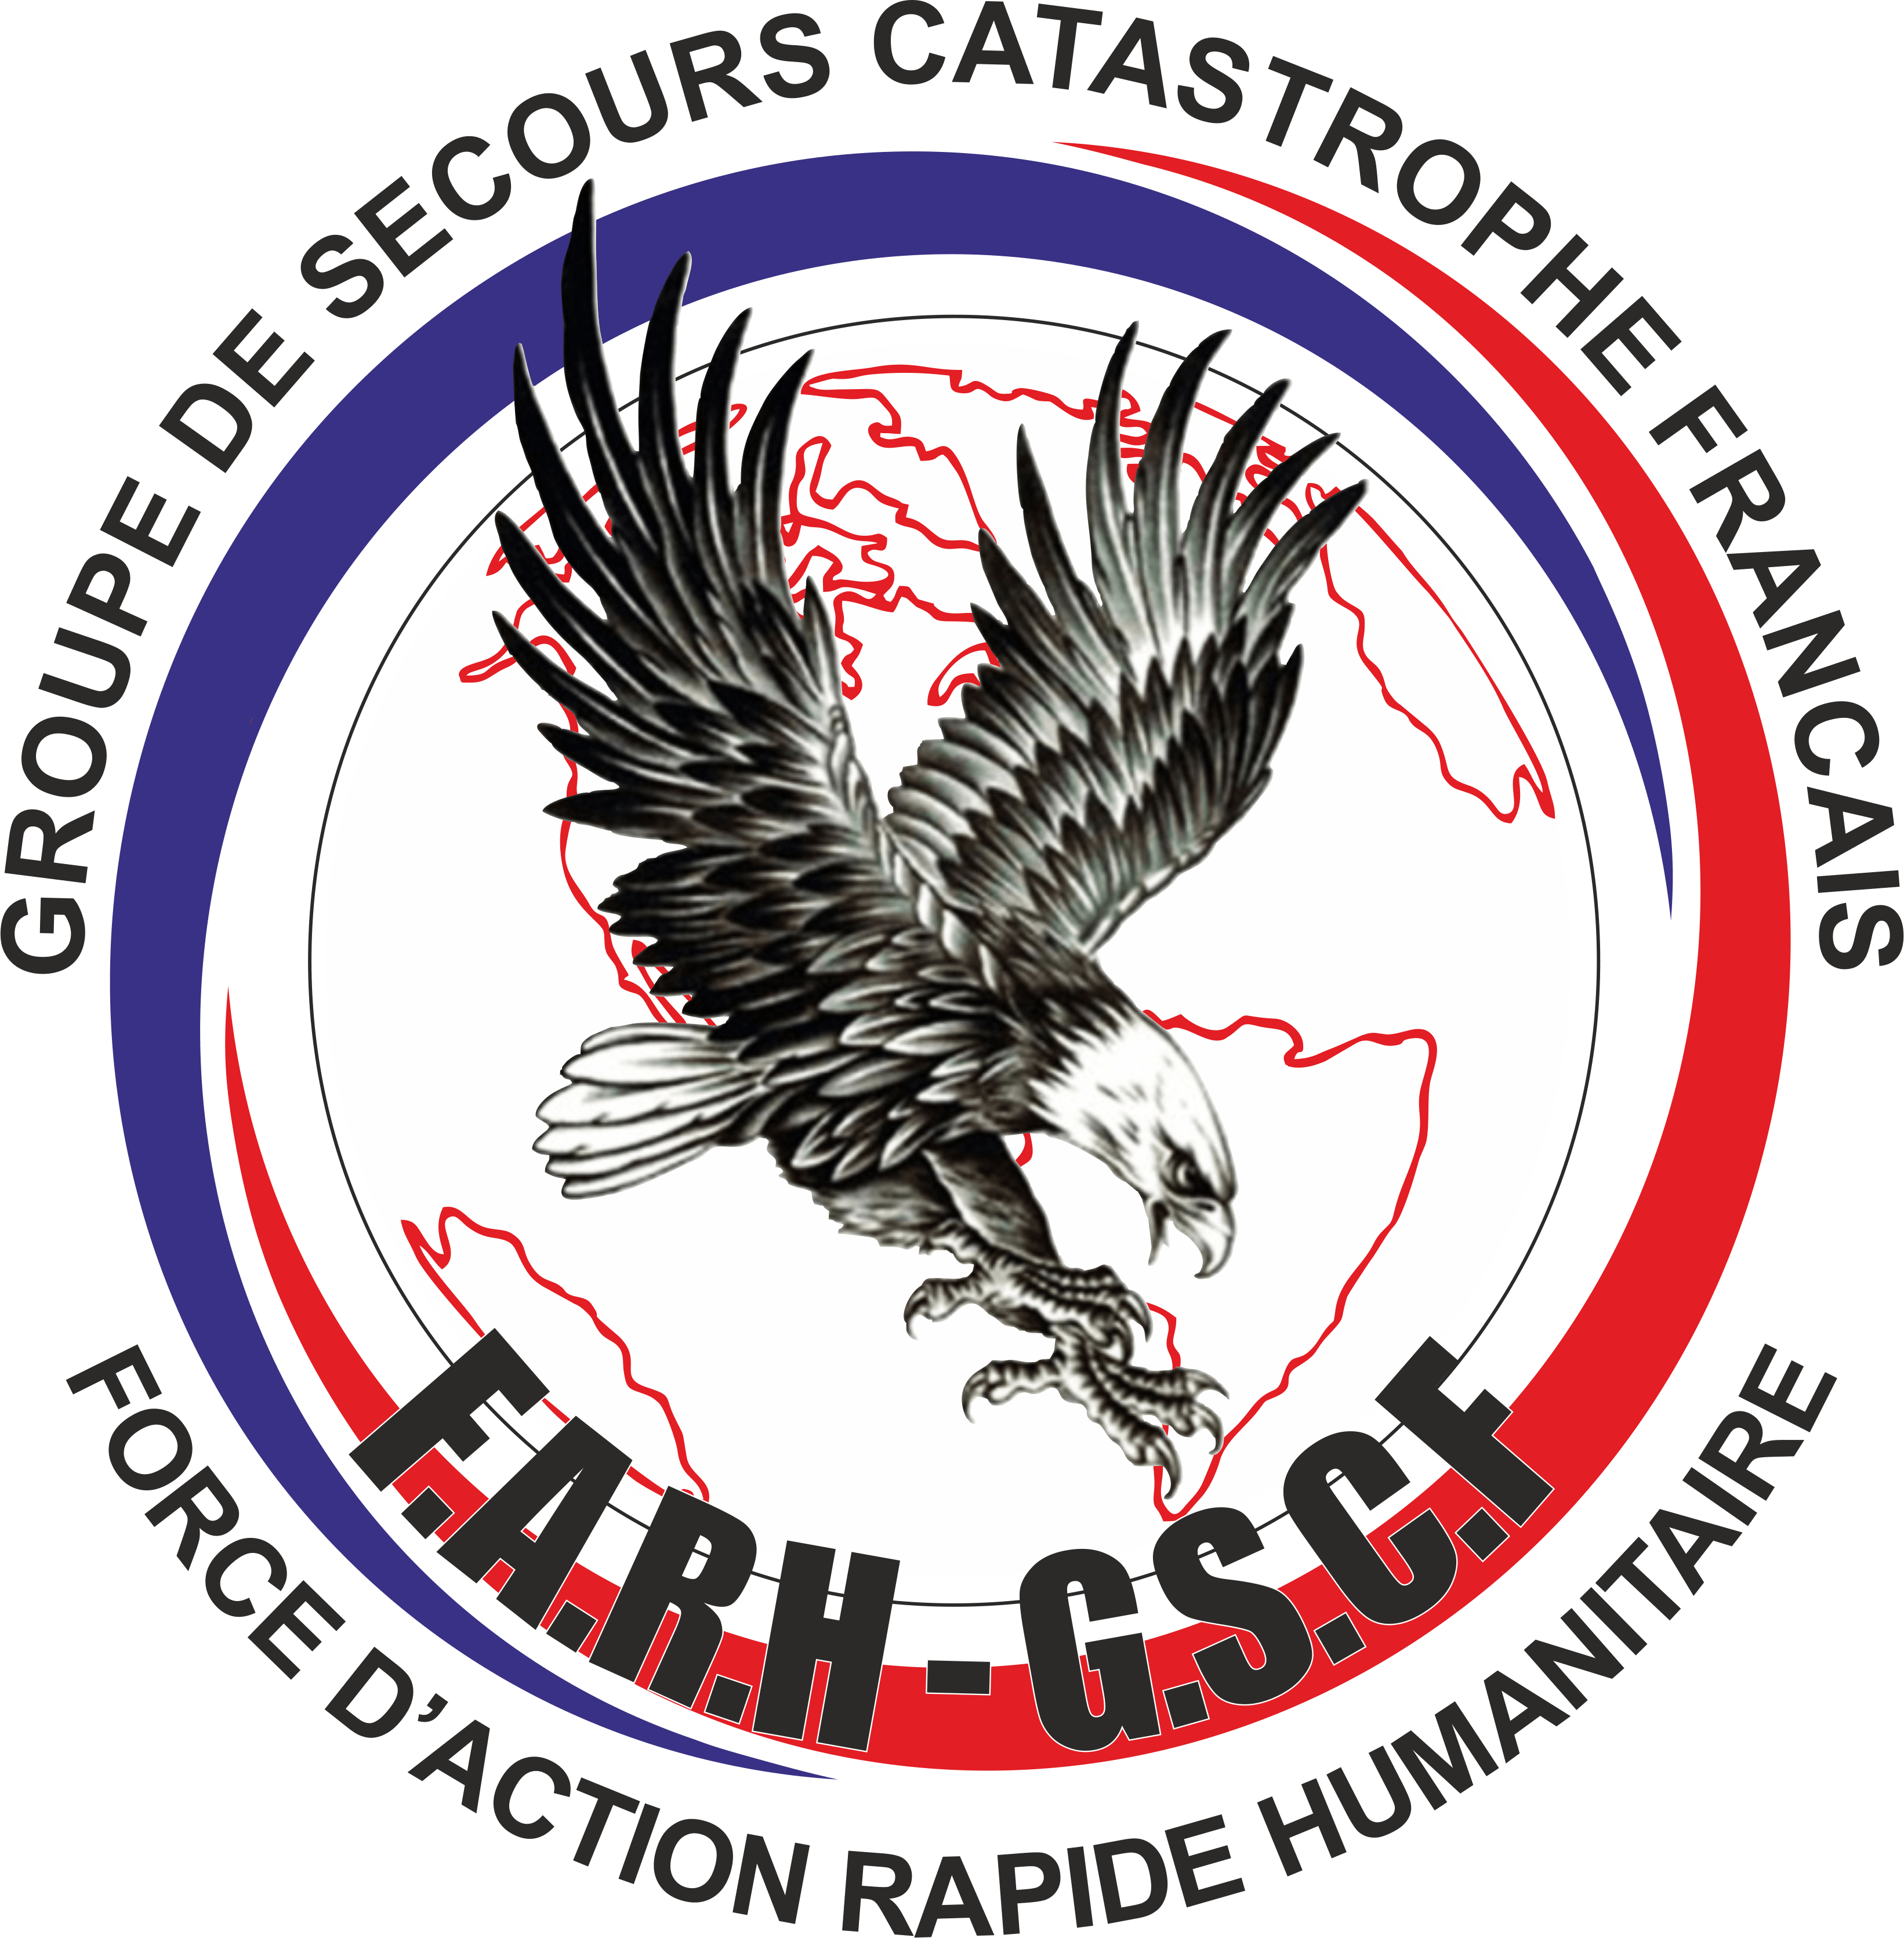 Gscf Logo - Sortie du logo de la Force d'Action Rapide Humanitaire du GSCF